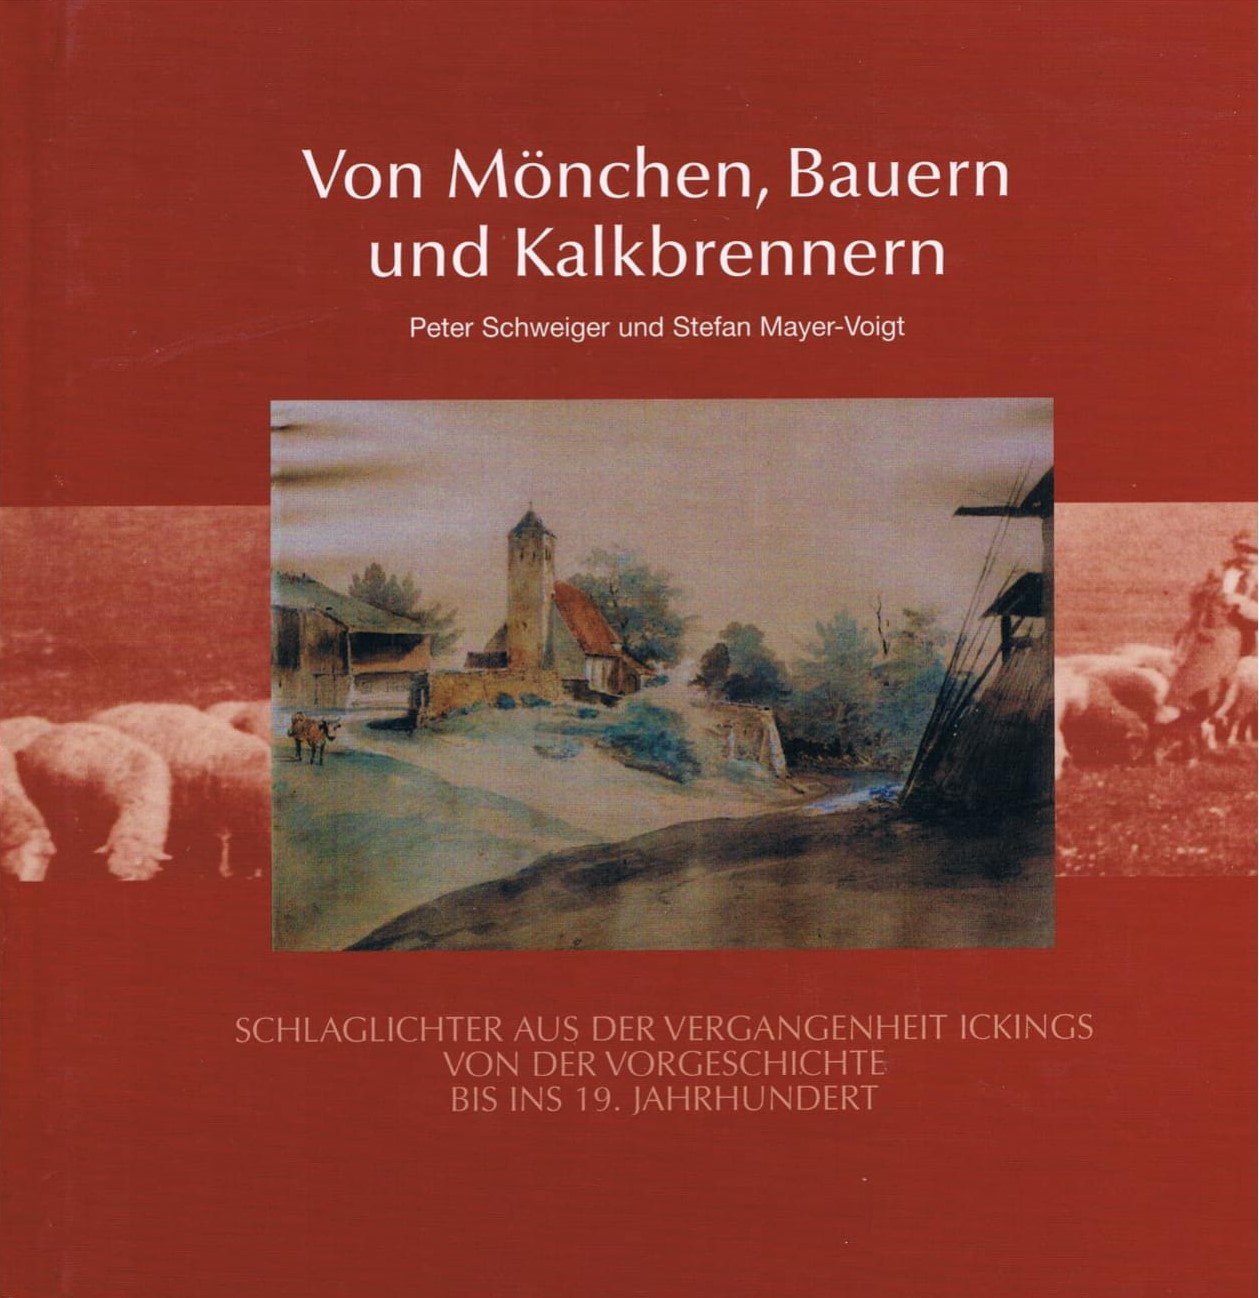 Peter Schweiger und Stefan Mayer-Voigt - Von Mönchen, Bauern und Kalkbrennern